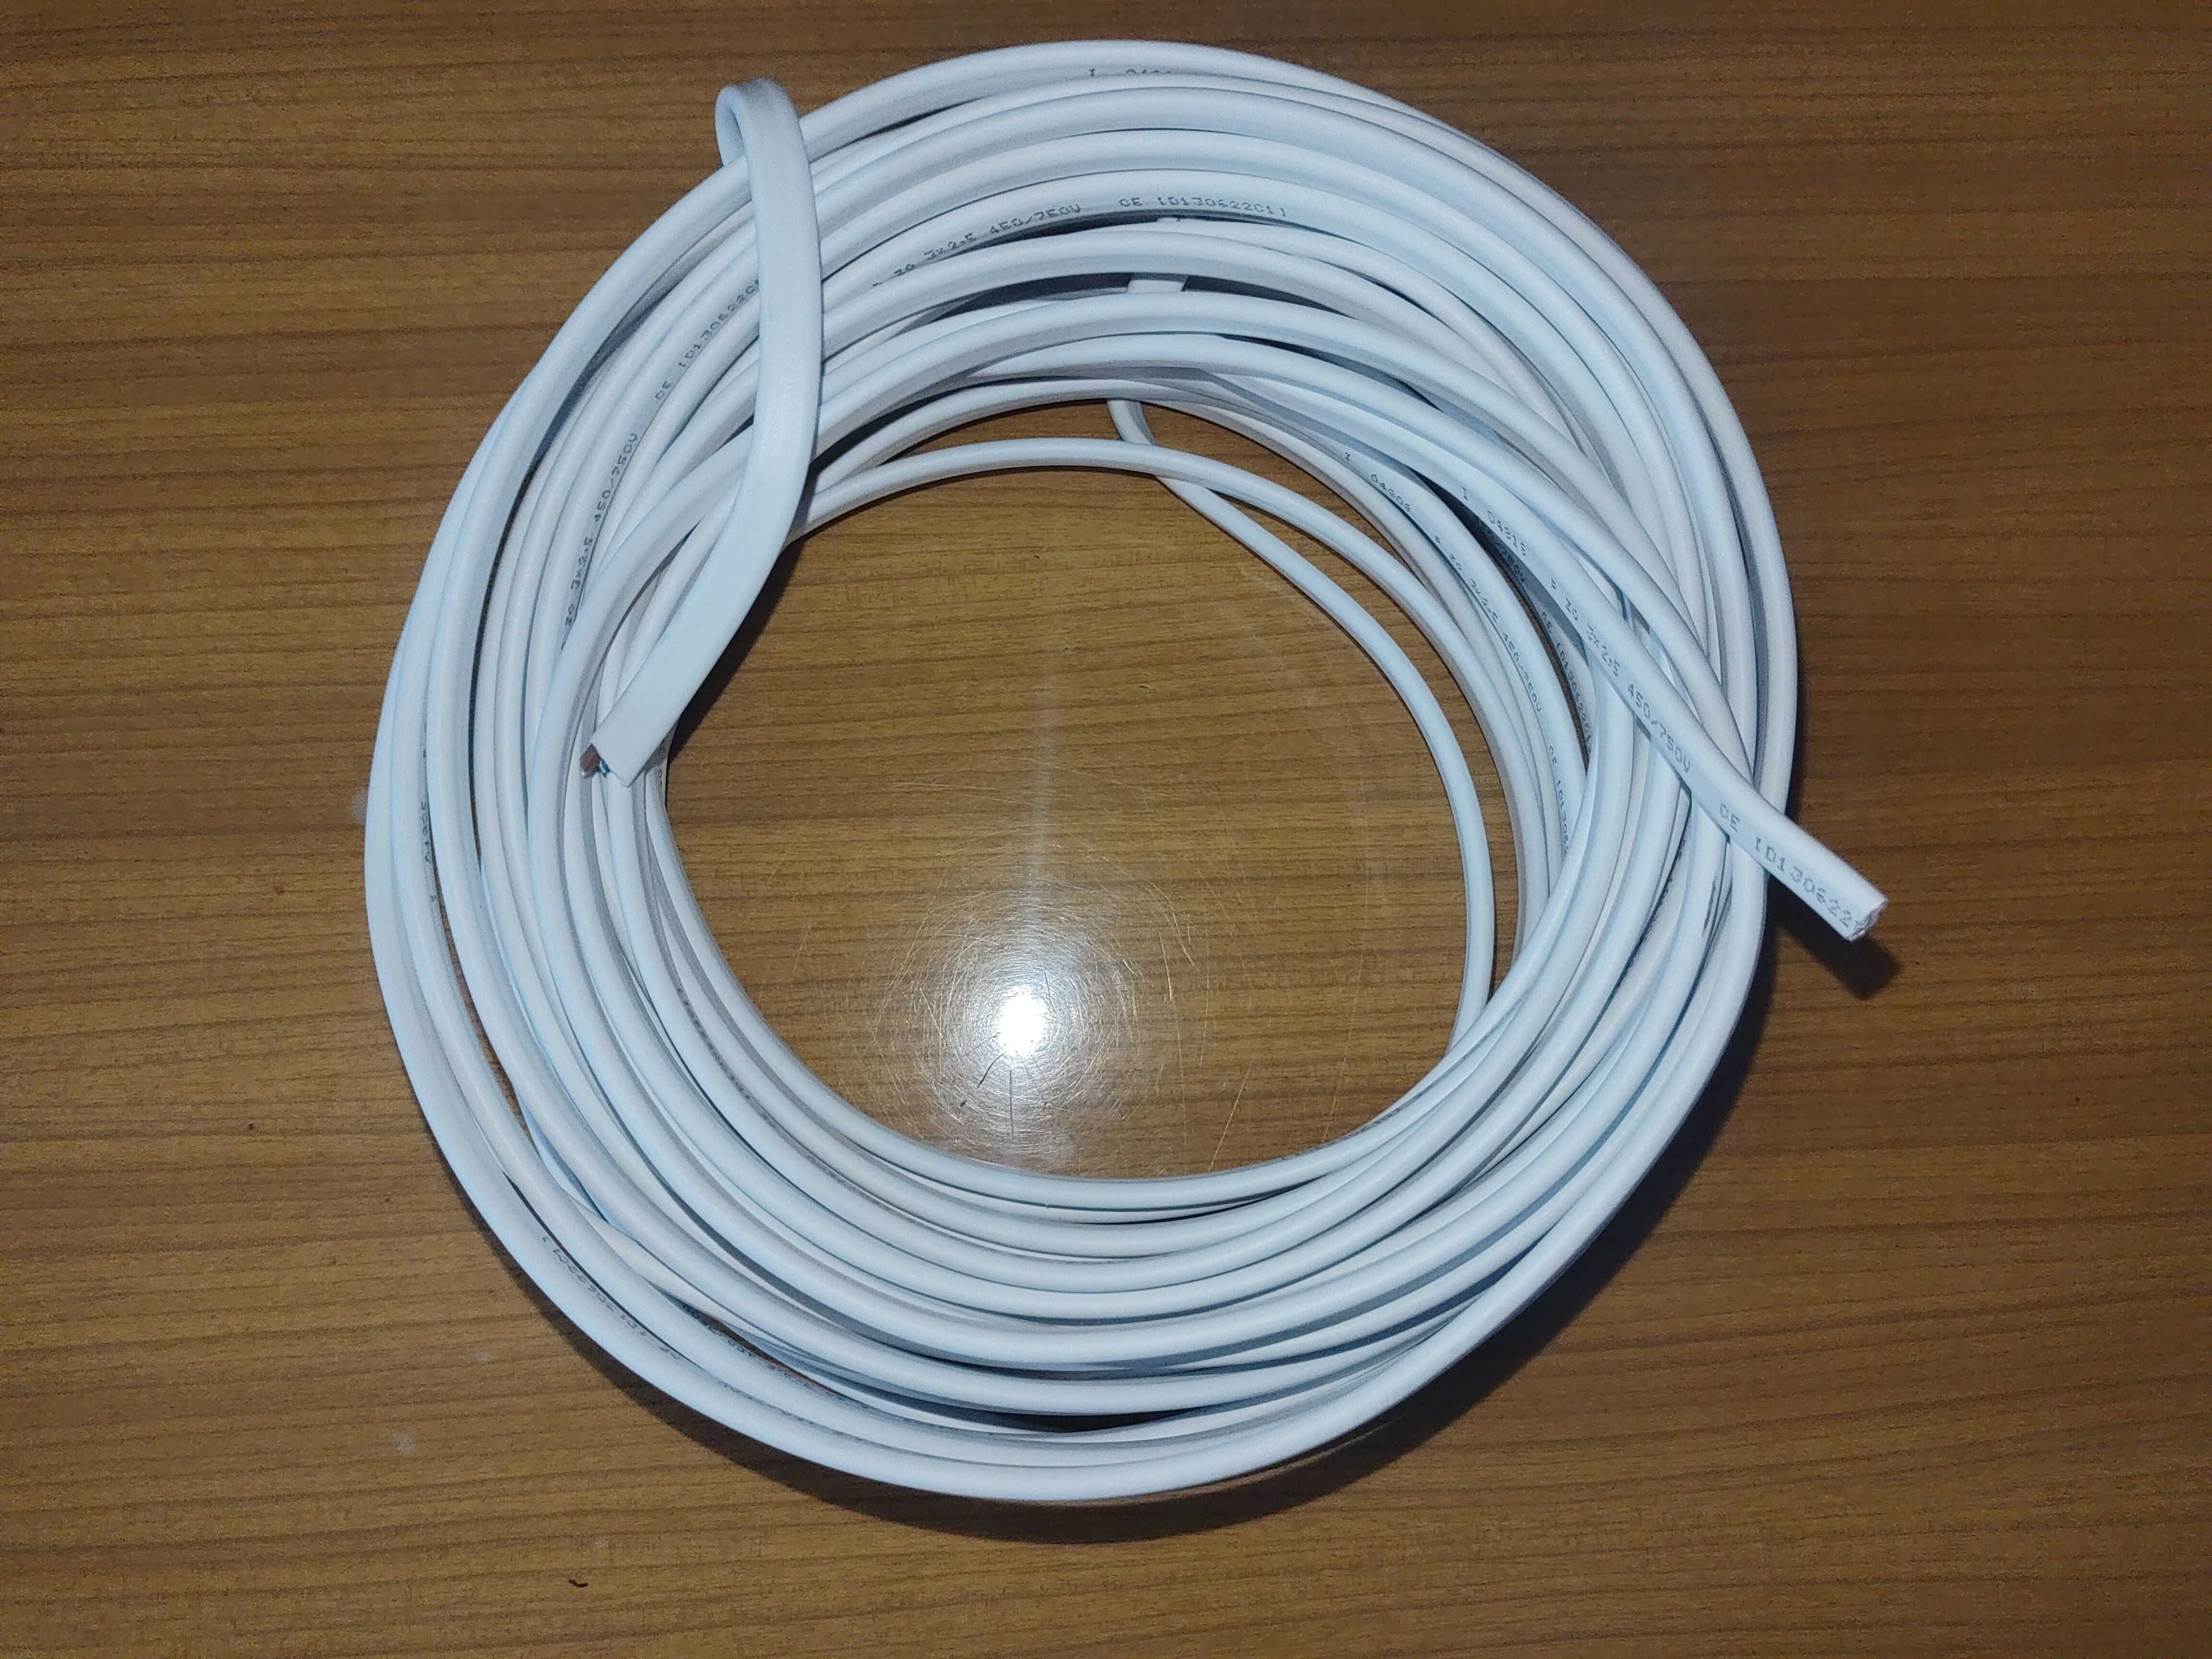 Przewód ydyp 3x1,5 żo 450/750v kabel 9 metrów